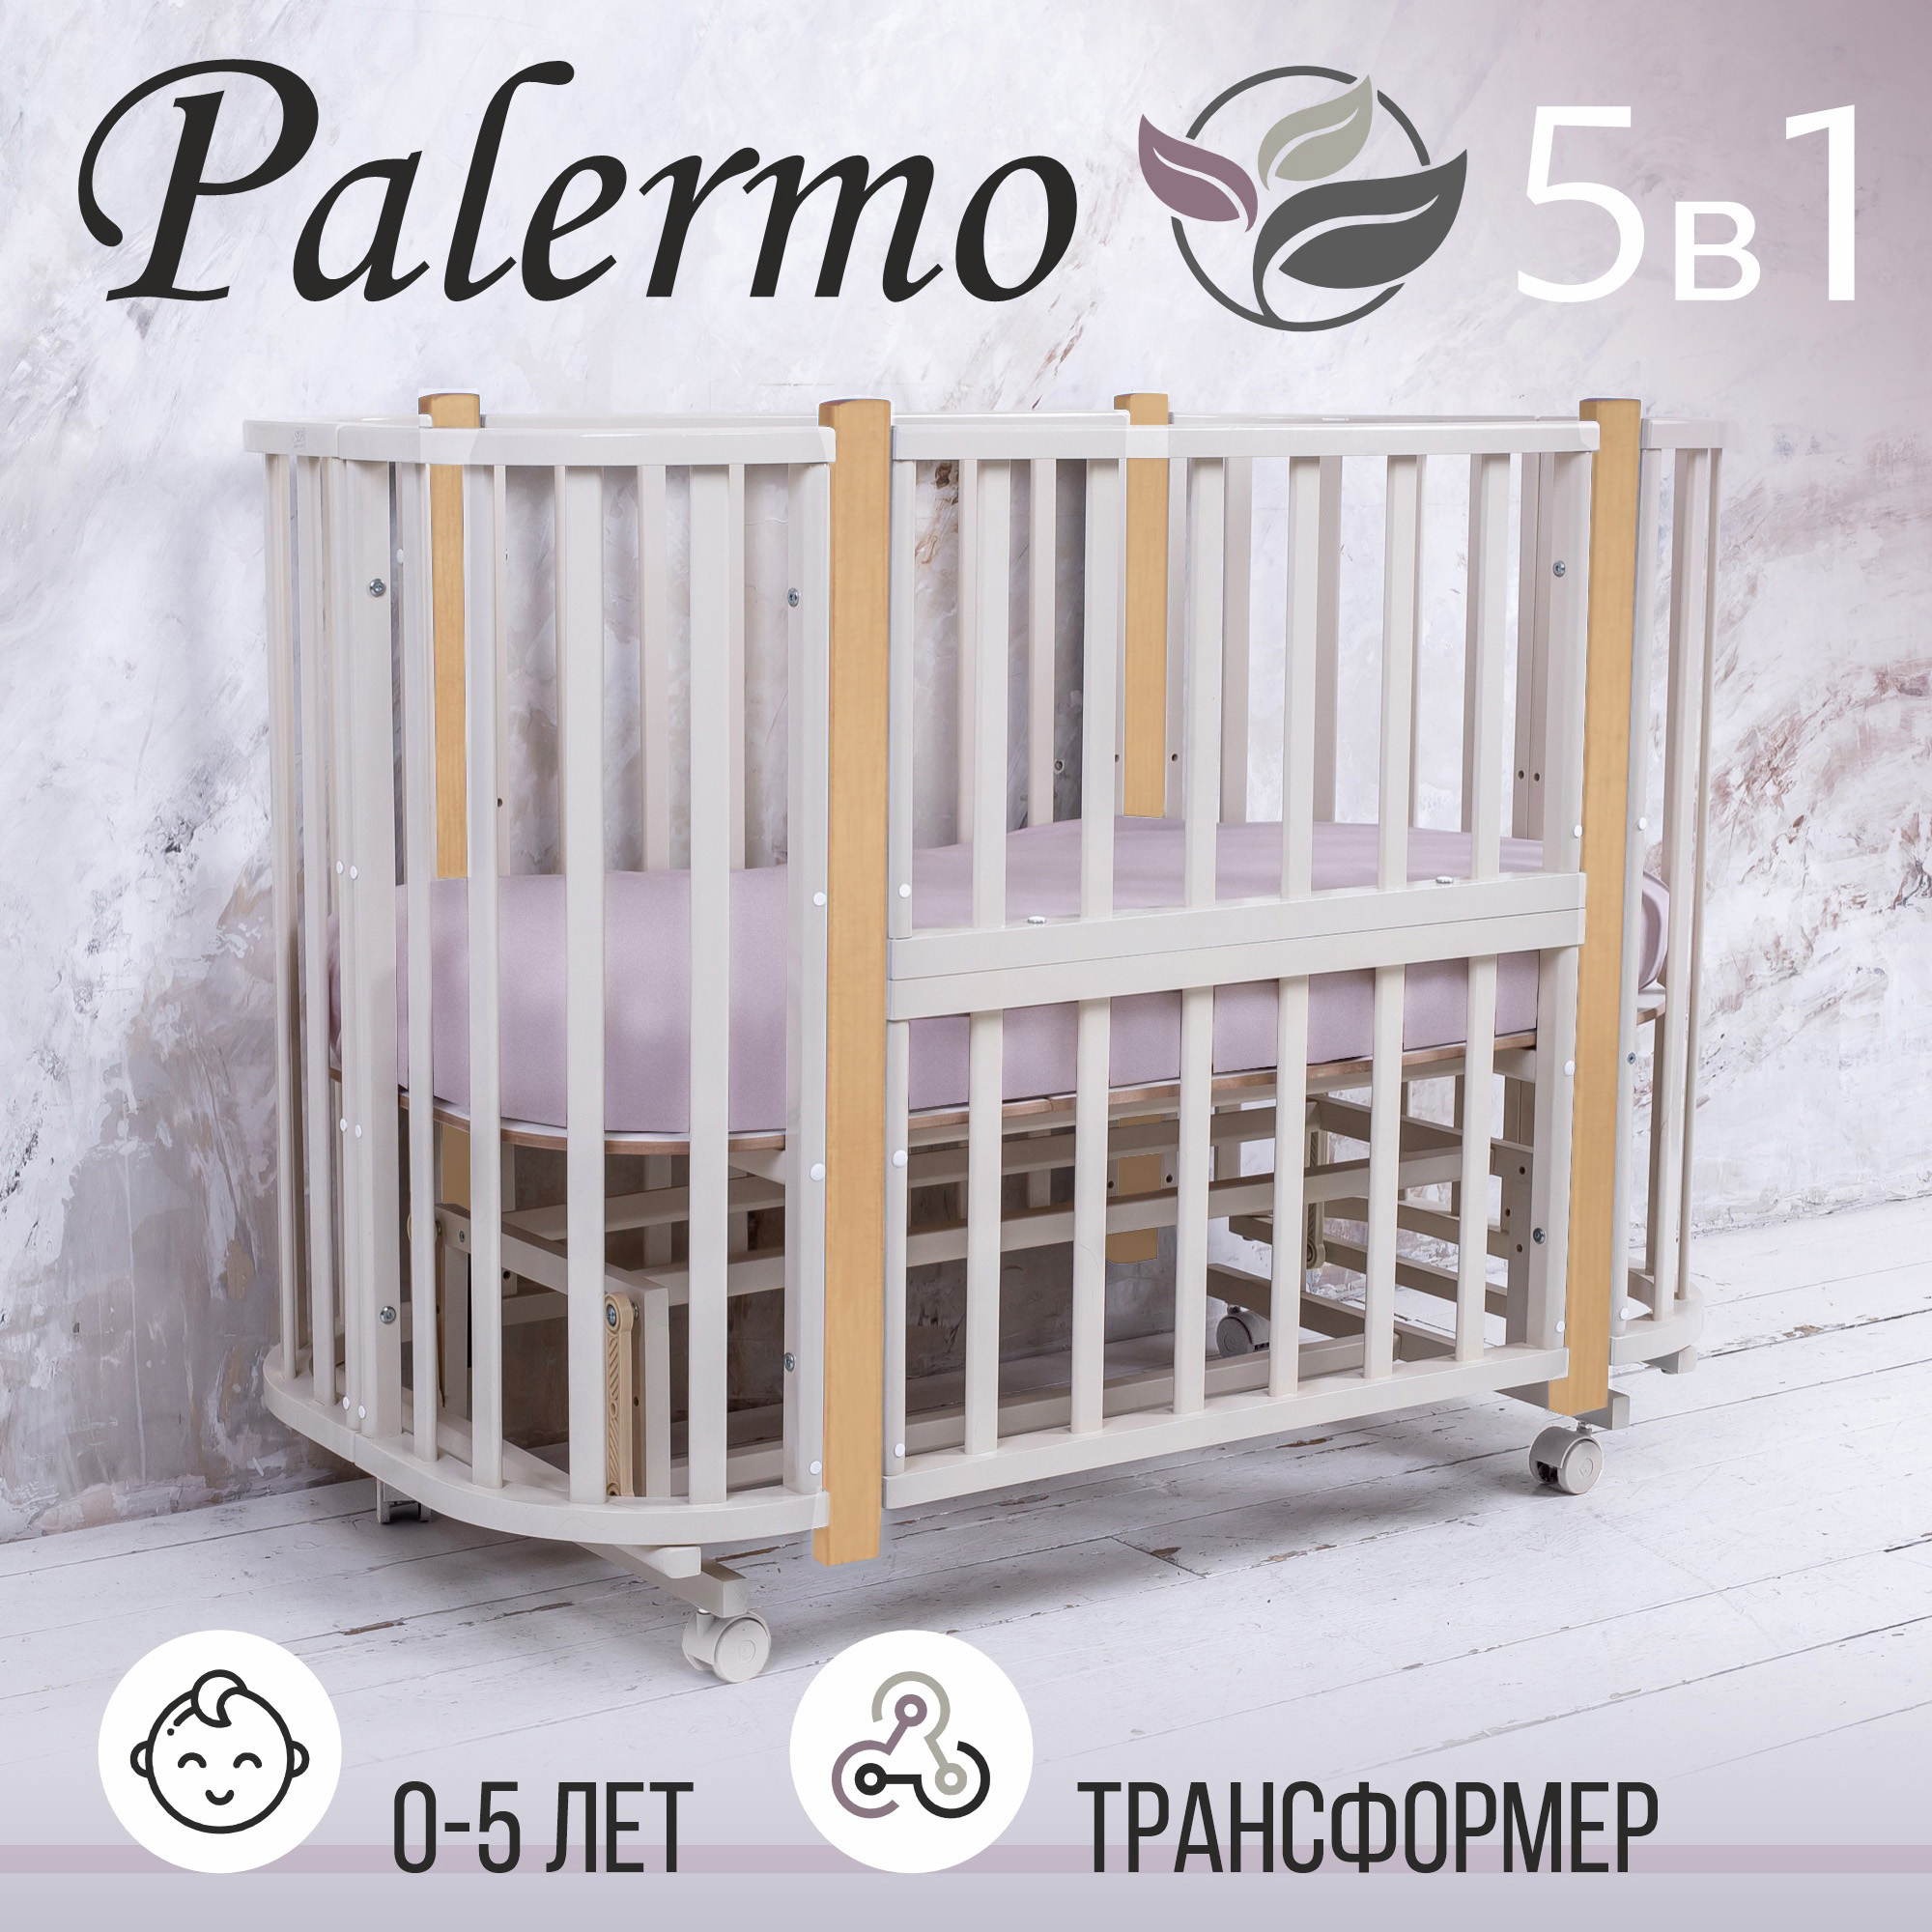 Кровать-трансформер Sweet Baby 5в1 с маятником Palermo Сachemire/Naturale (кашемир/натур)